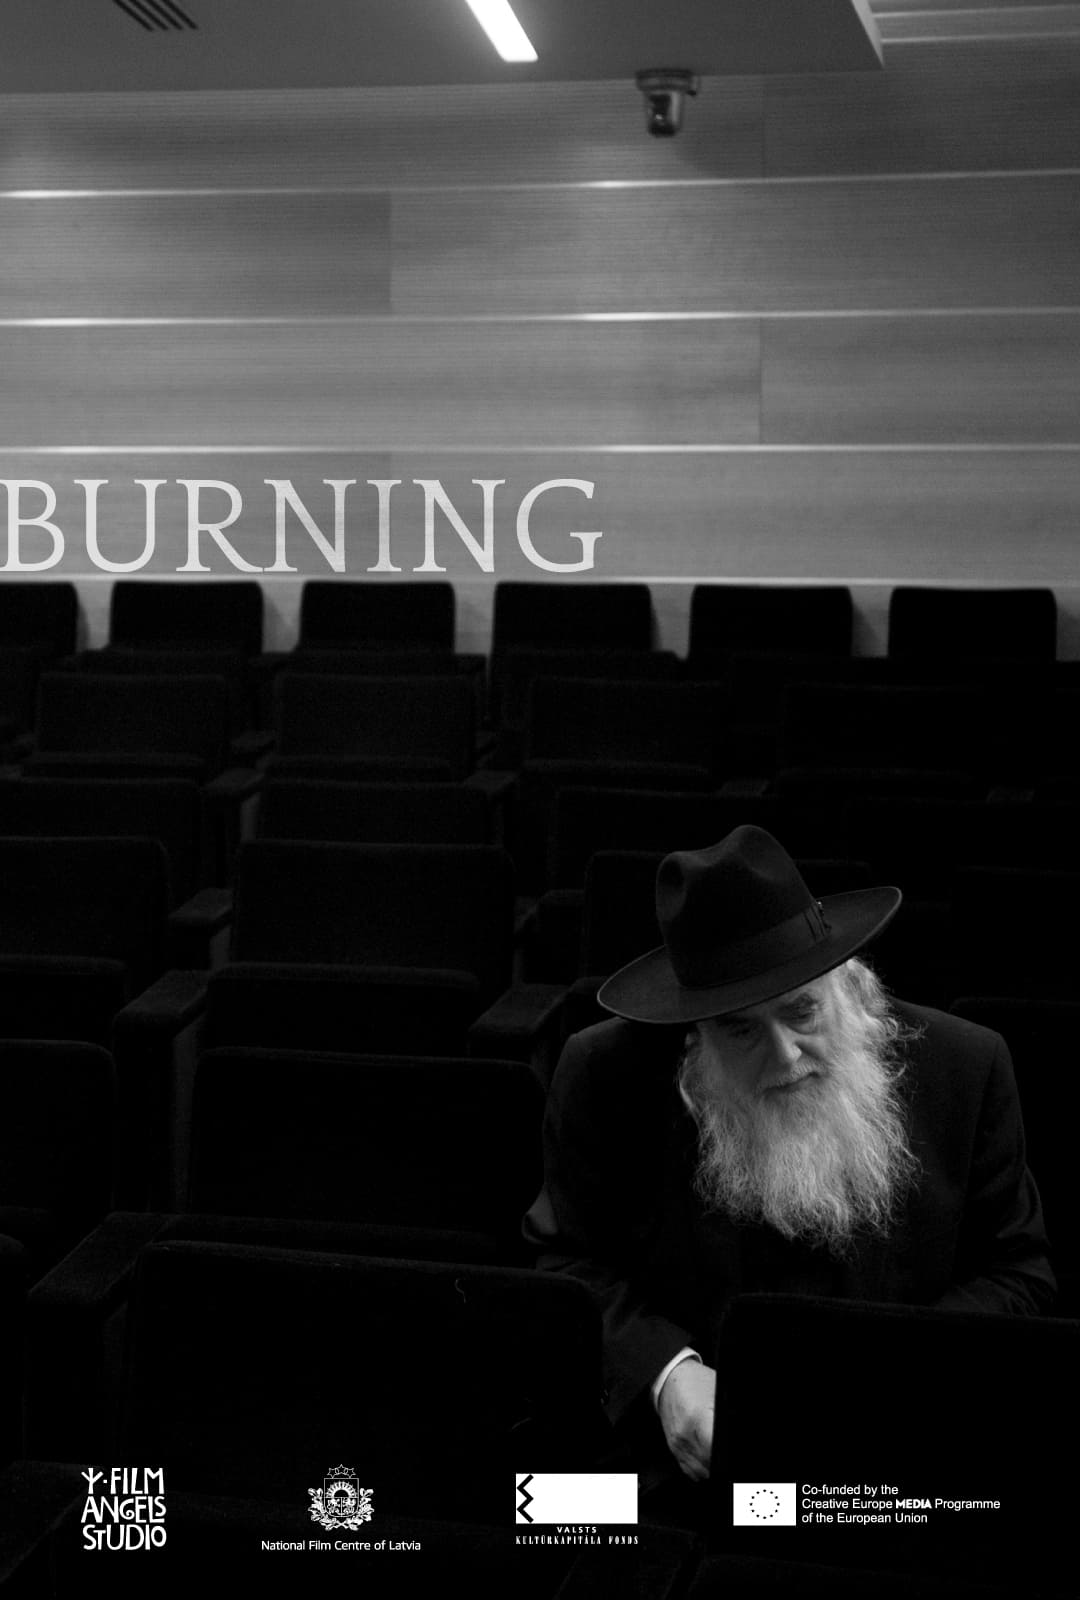 Eliyahu Rips: The Burning